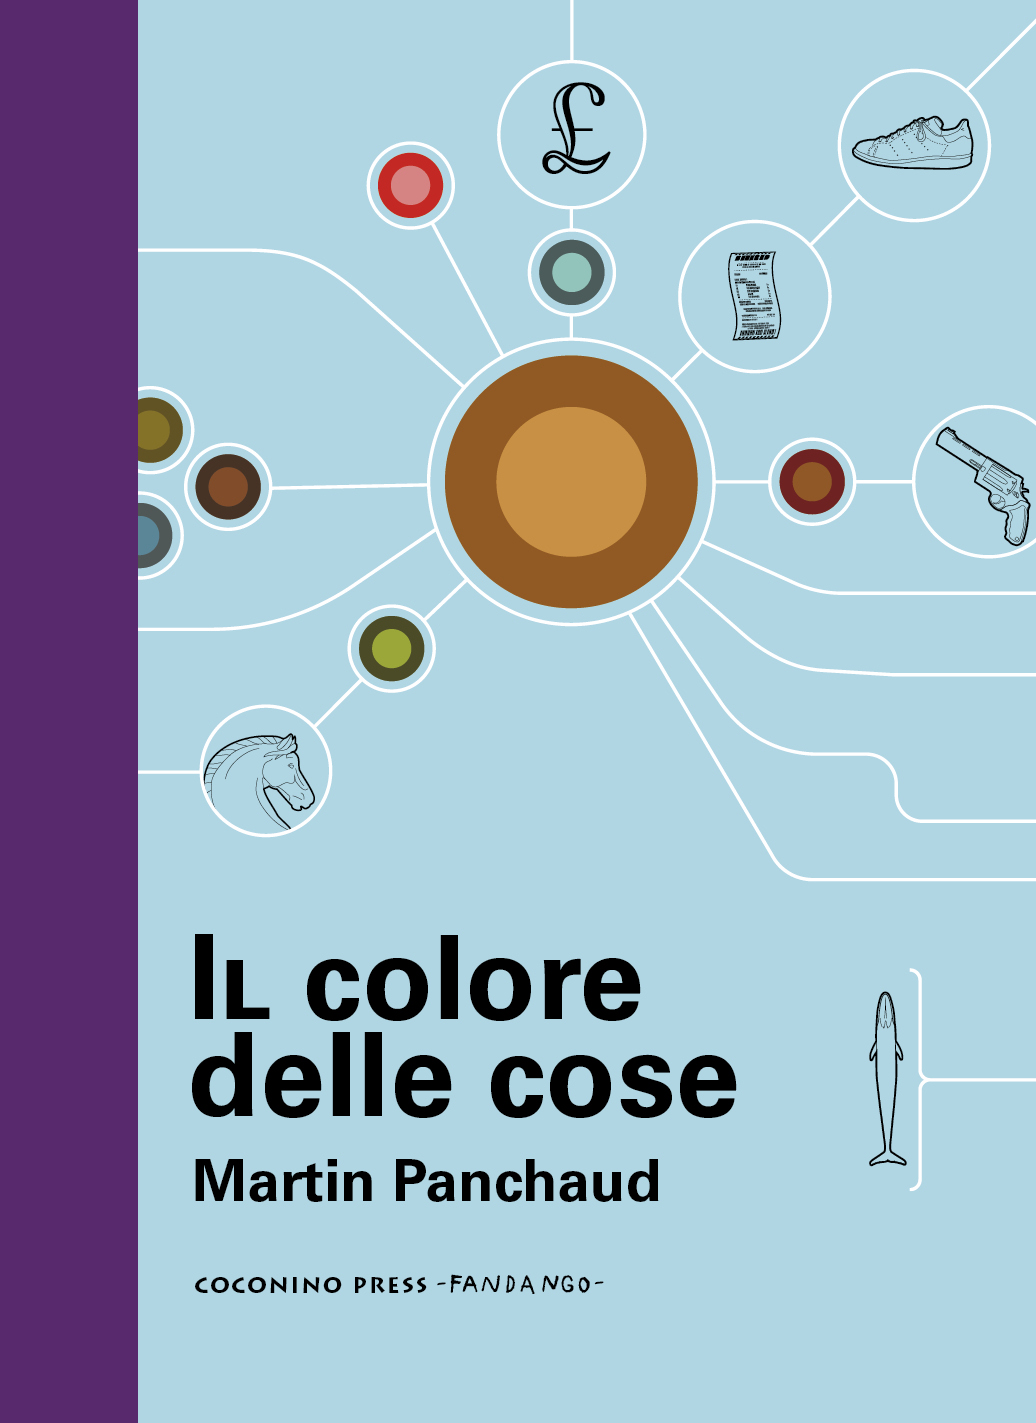 Il colore delle cose (GraphicNovel, Italiano language, Coconino Press)